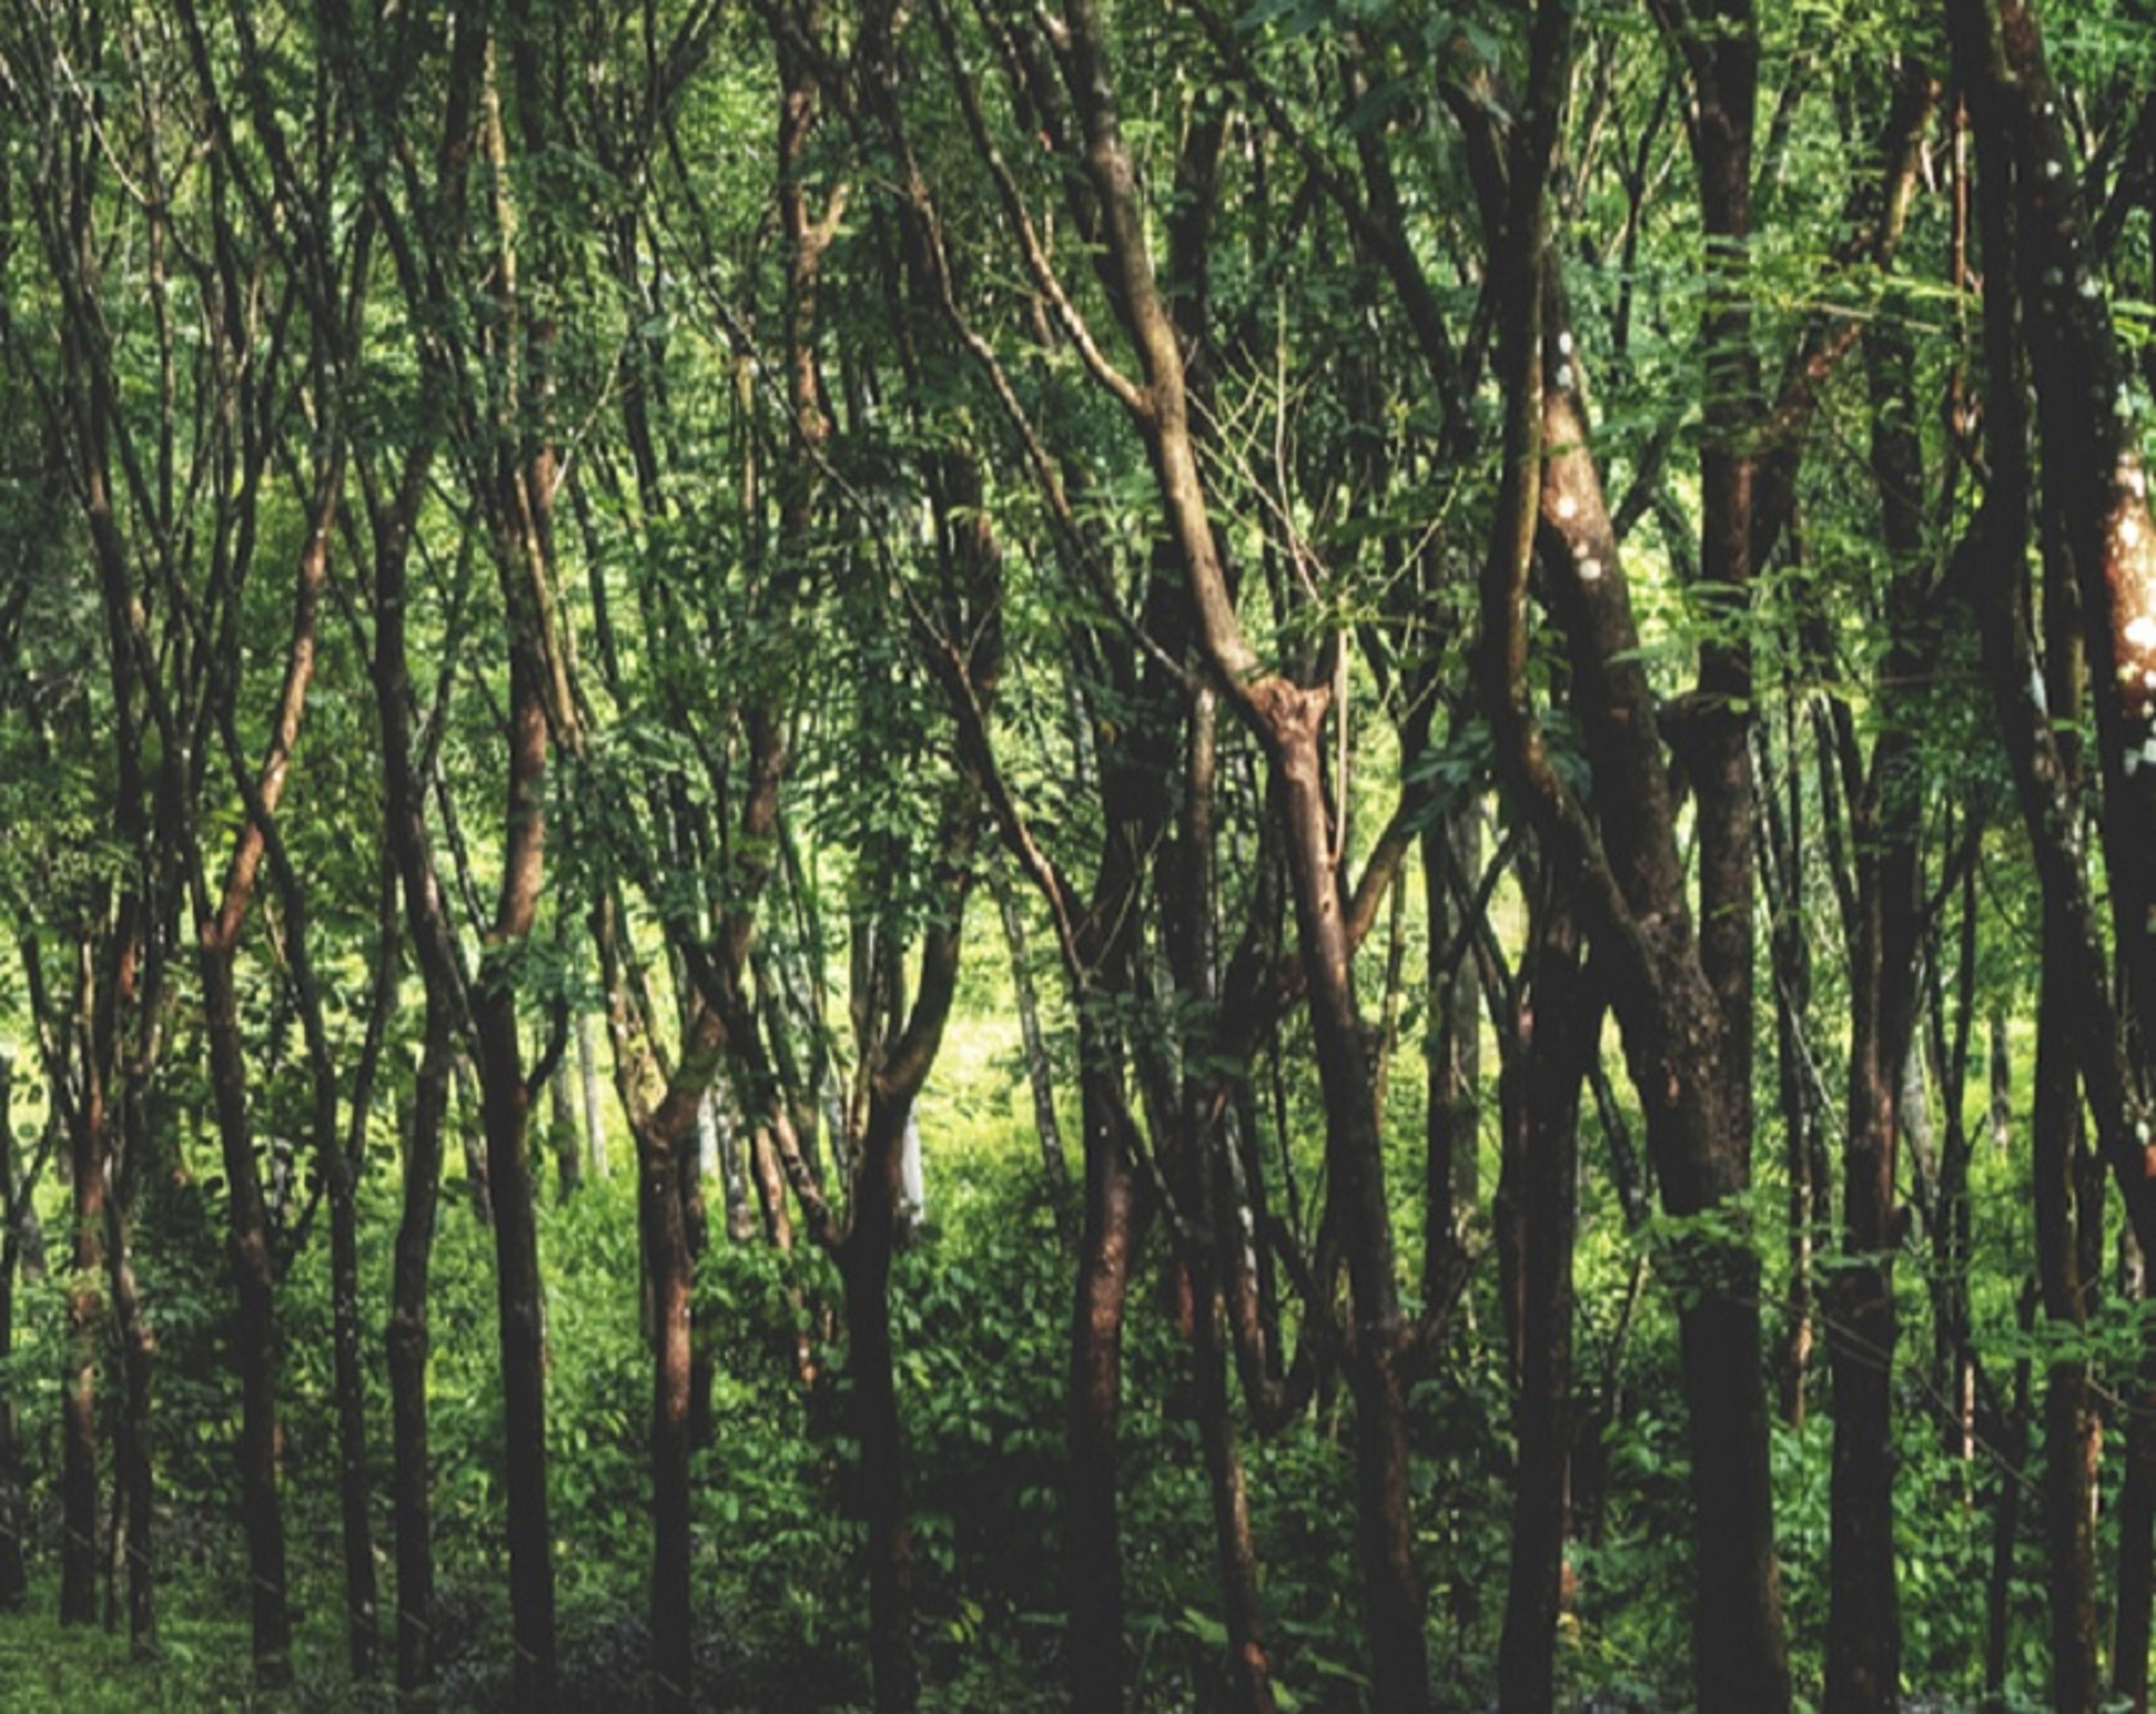 मियावाकी विधि से 10 वर्षों में तैयार किए जा सकेंगे सौ वर्ष समतुल्य वन